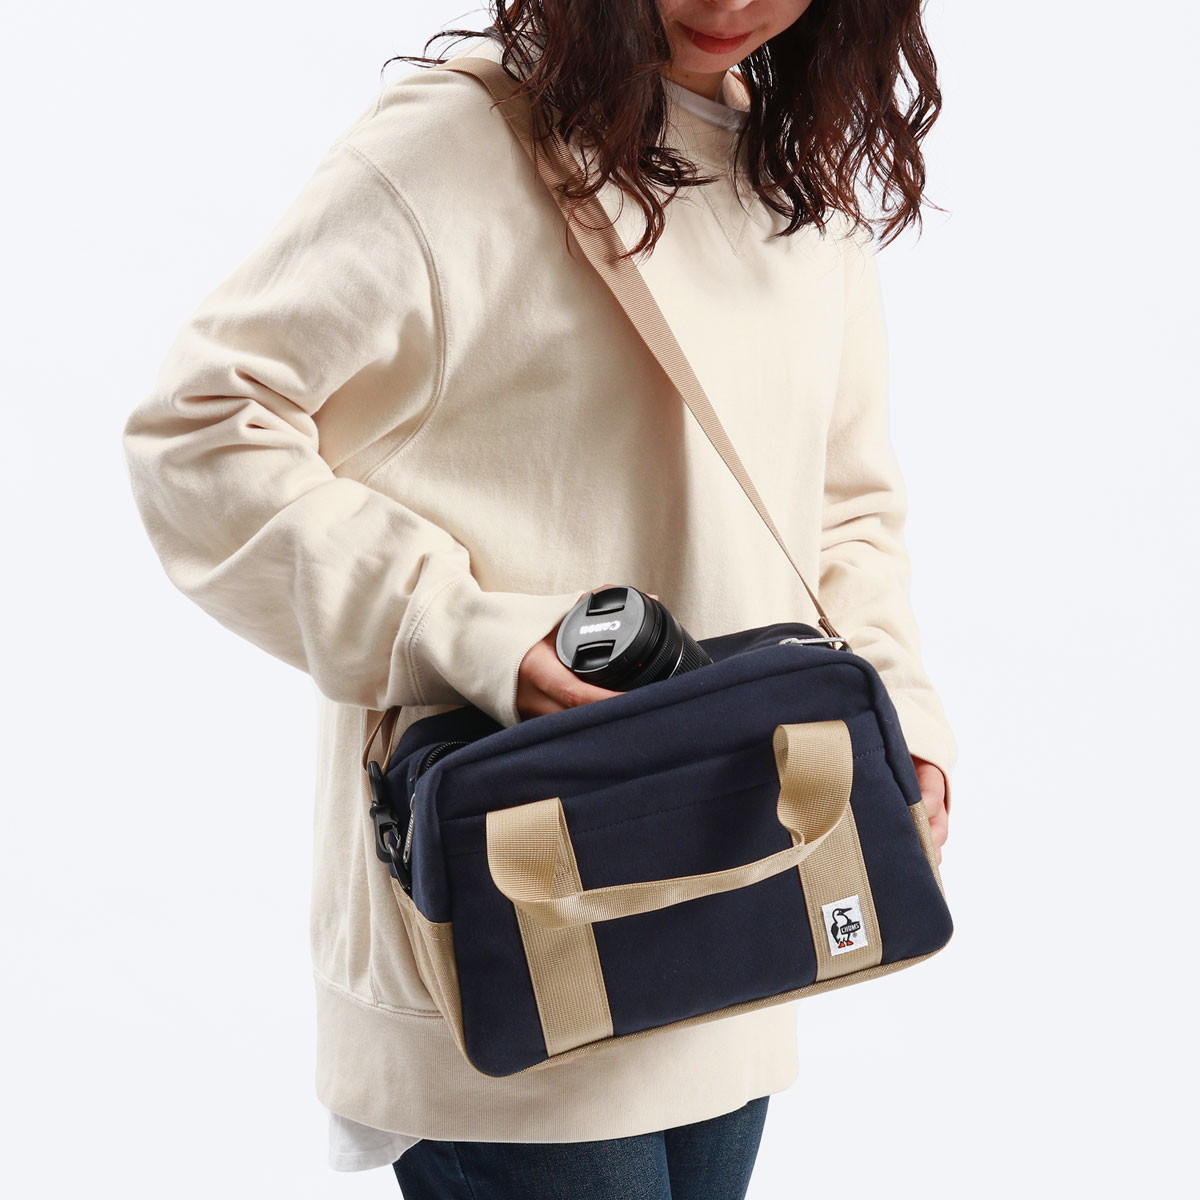  Япония стандартный товар Chums камера сумка плечо однообъективный зеркальный перегородка . женщина CHUMS симпатичный симпатичный модный путешествие камера кейс soft CH60-3603